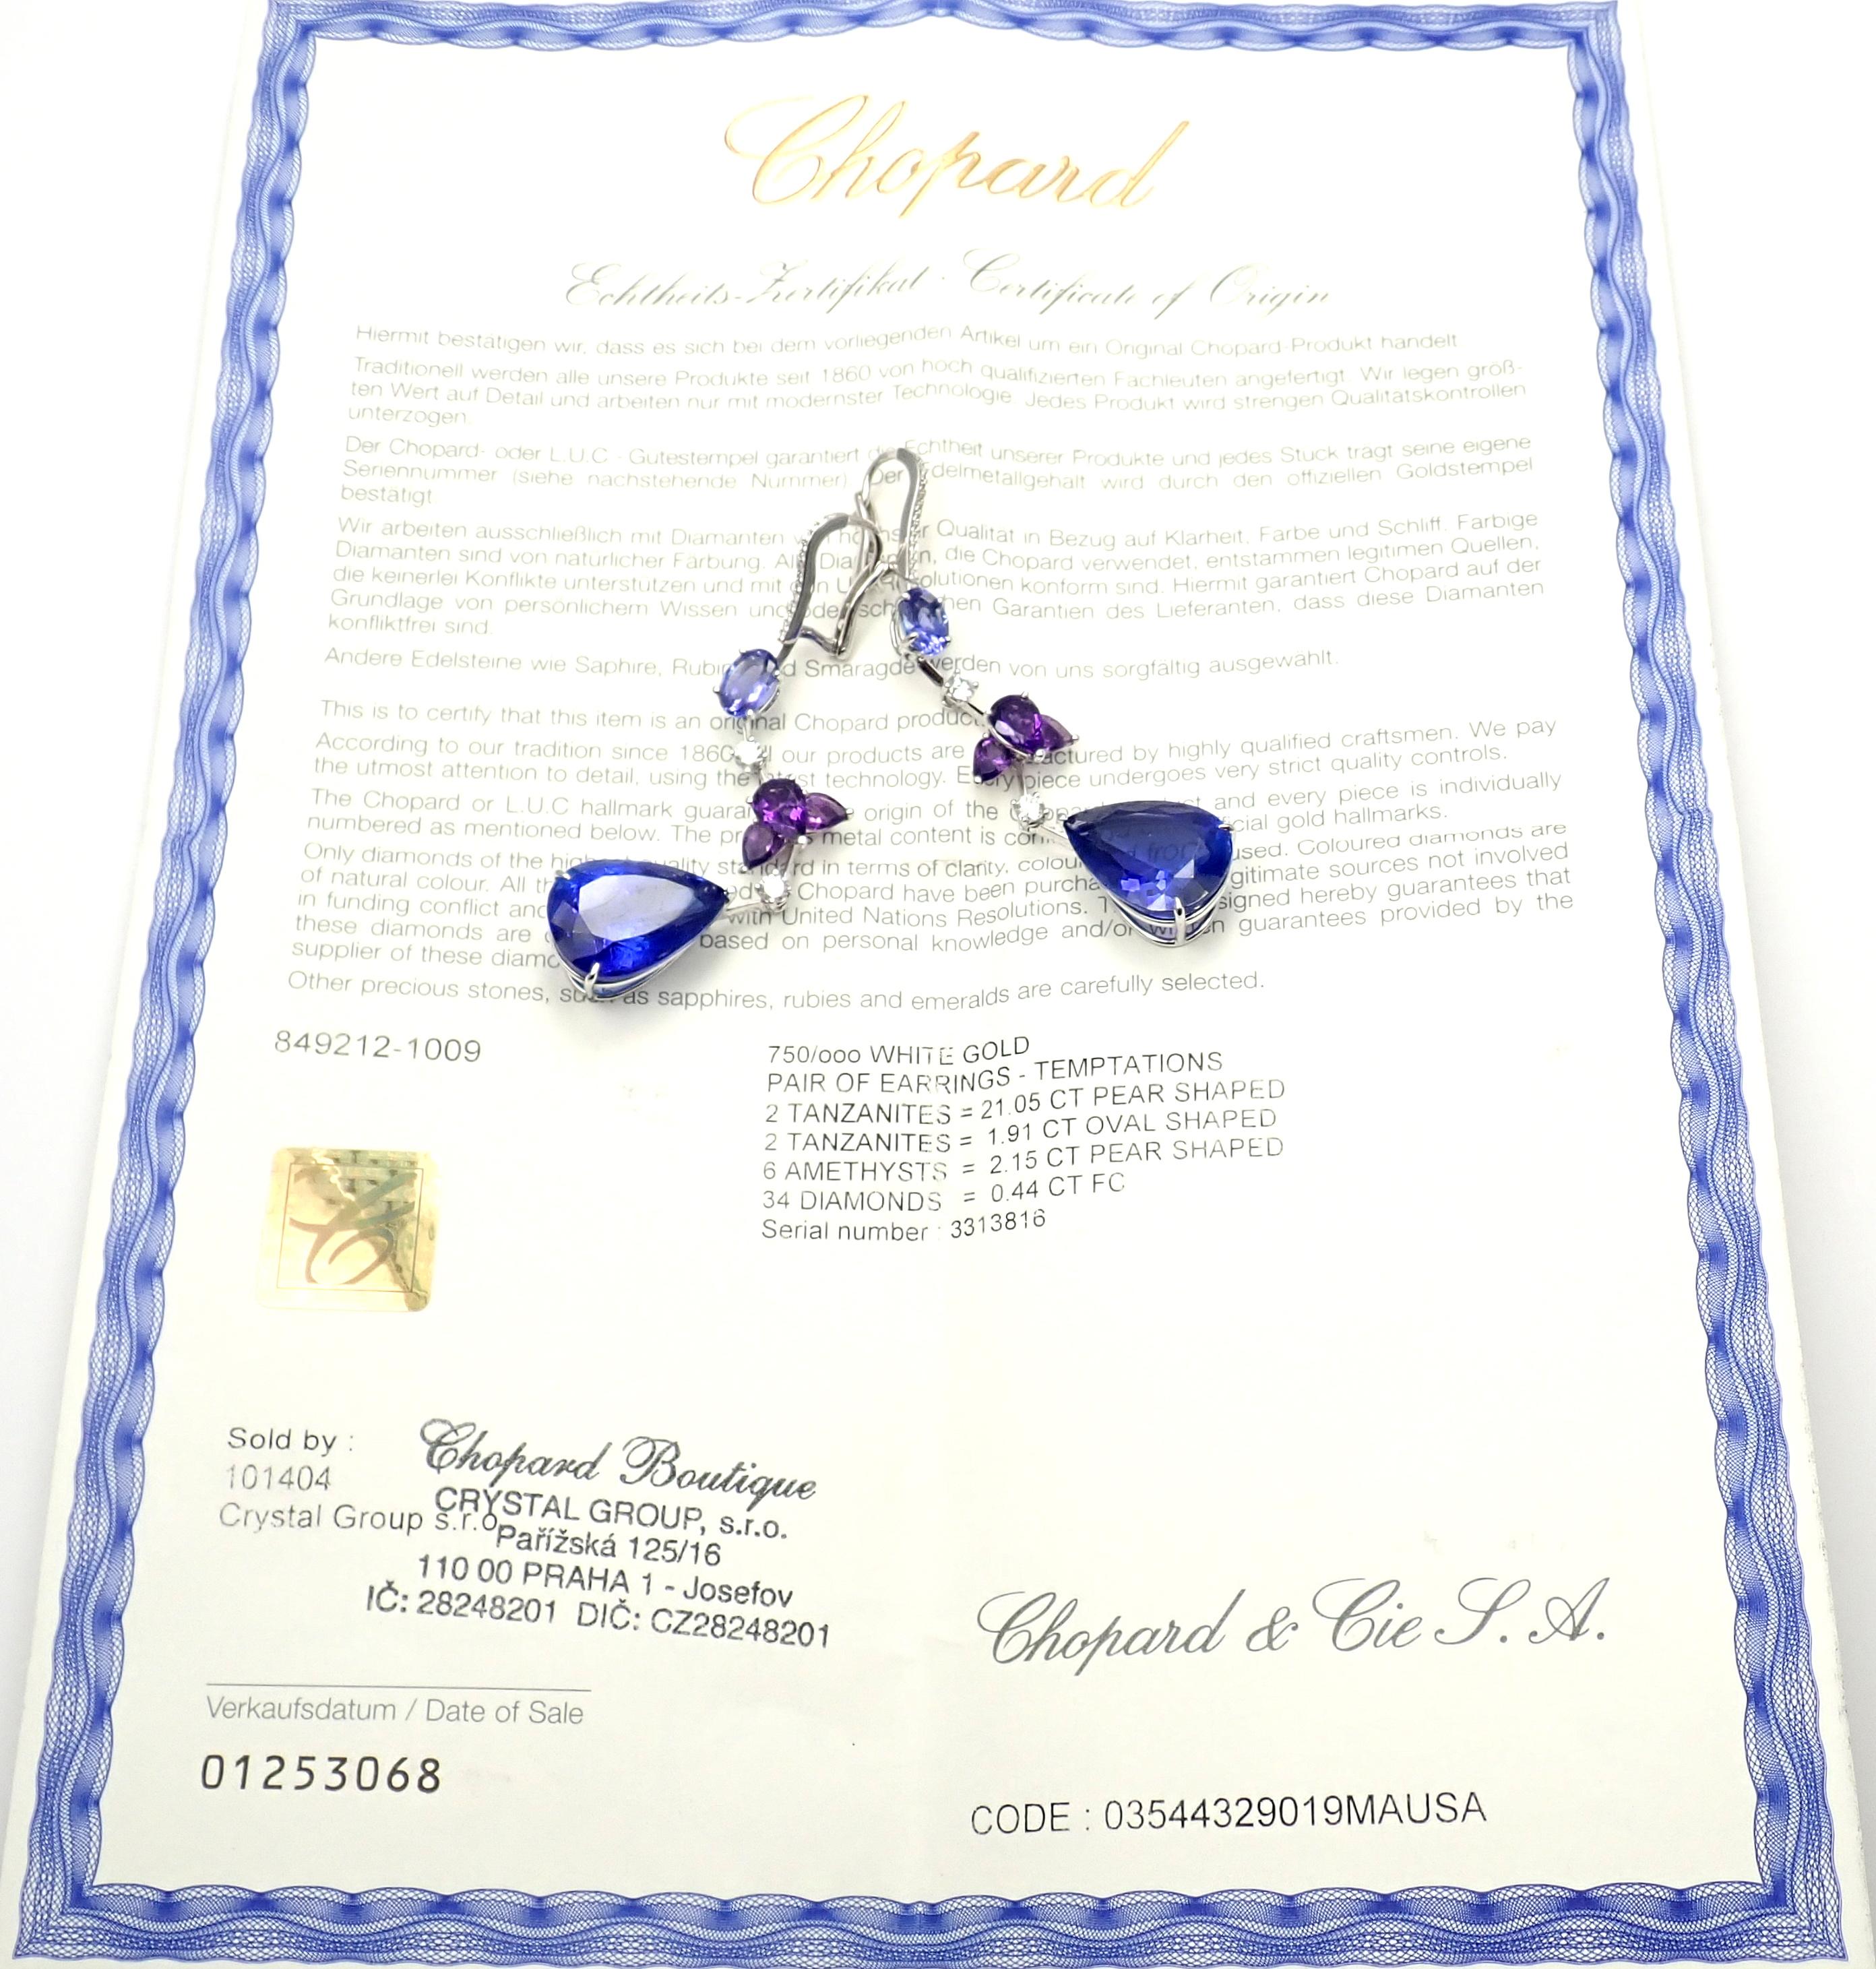 Women's or Men's Chopard Temptations High Jewelry Diamond Tanzanite Amethyst White Gold Earrings